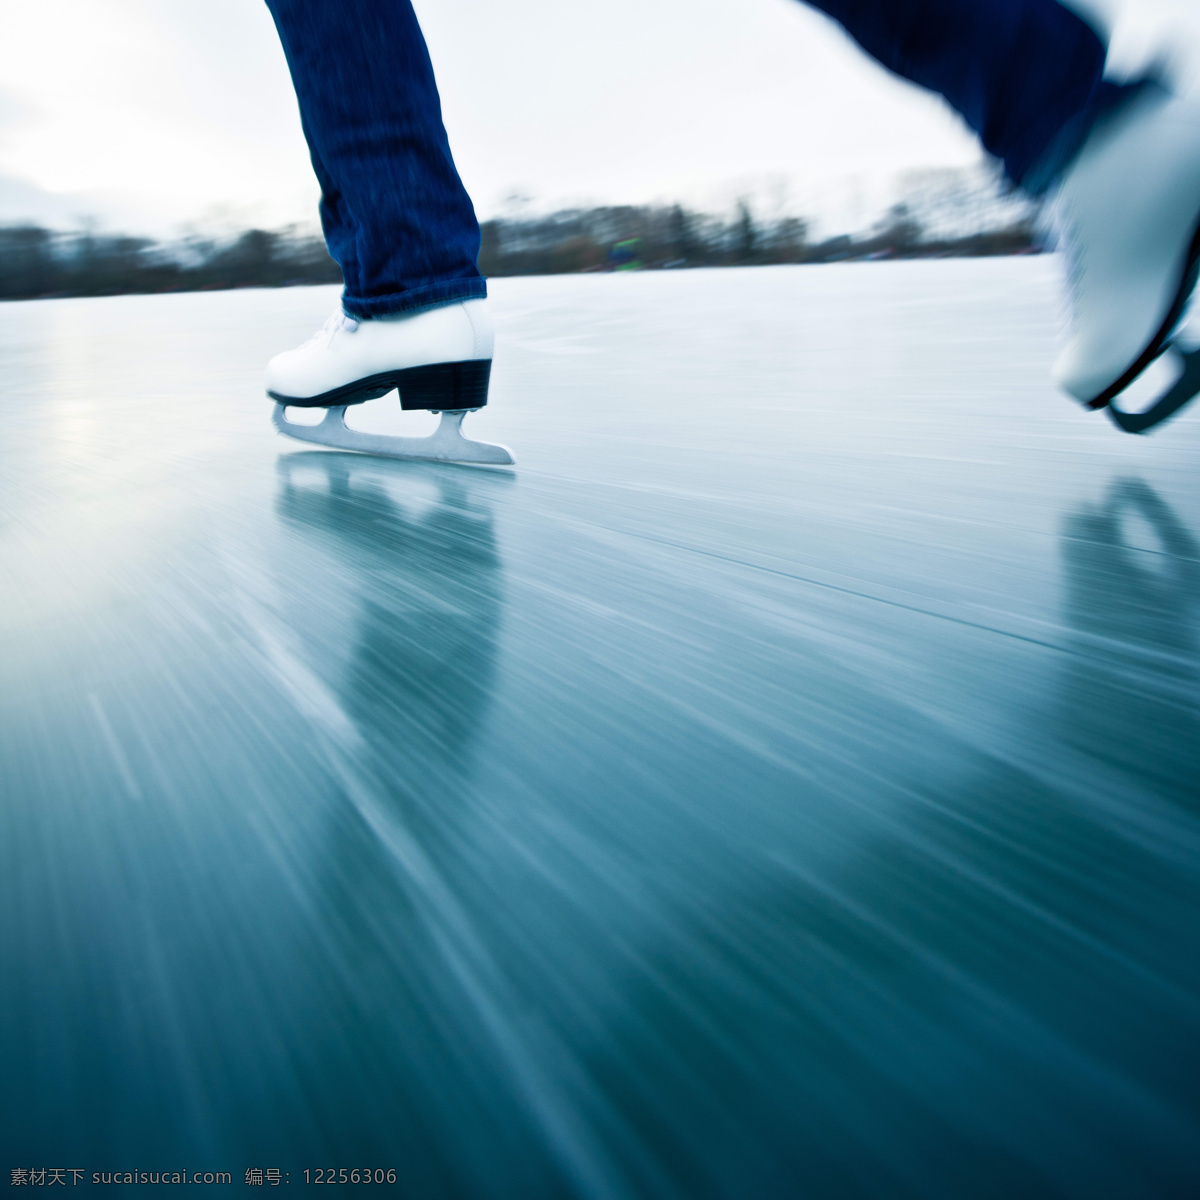 冰场 上 滑冰 运动员 体育运动 健身运动 滑冰运动员 冰刀鞋 生活百科